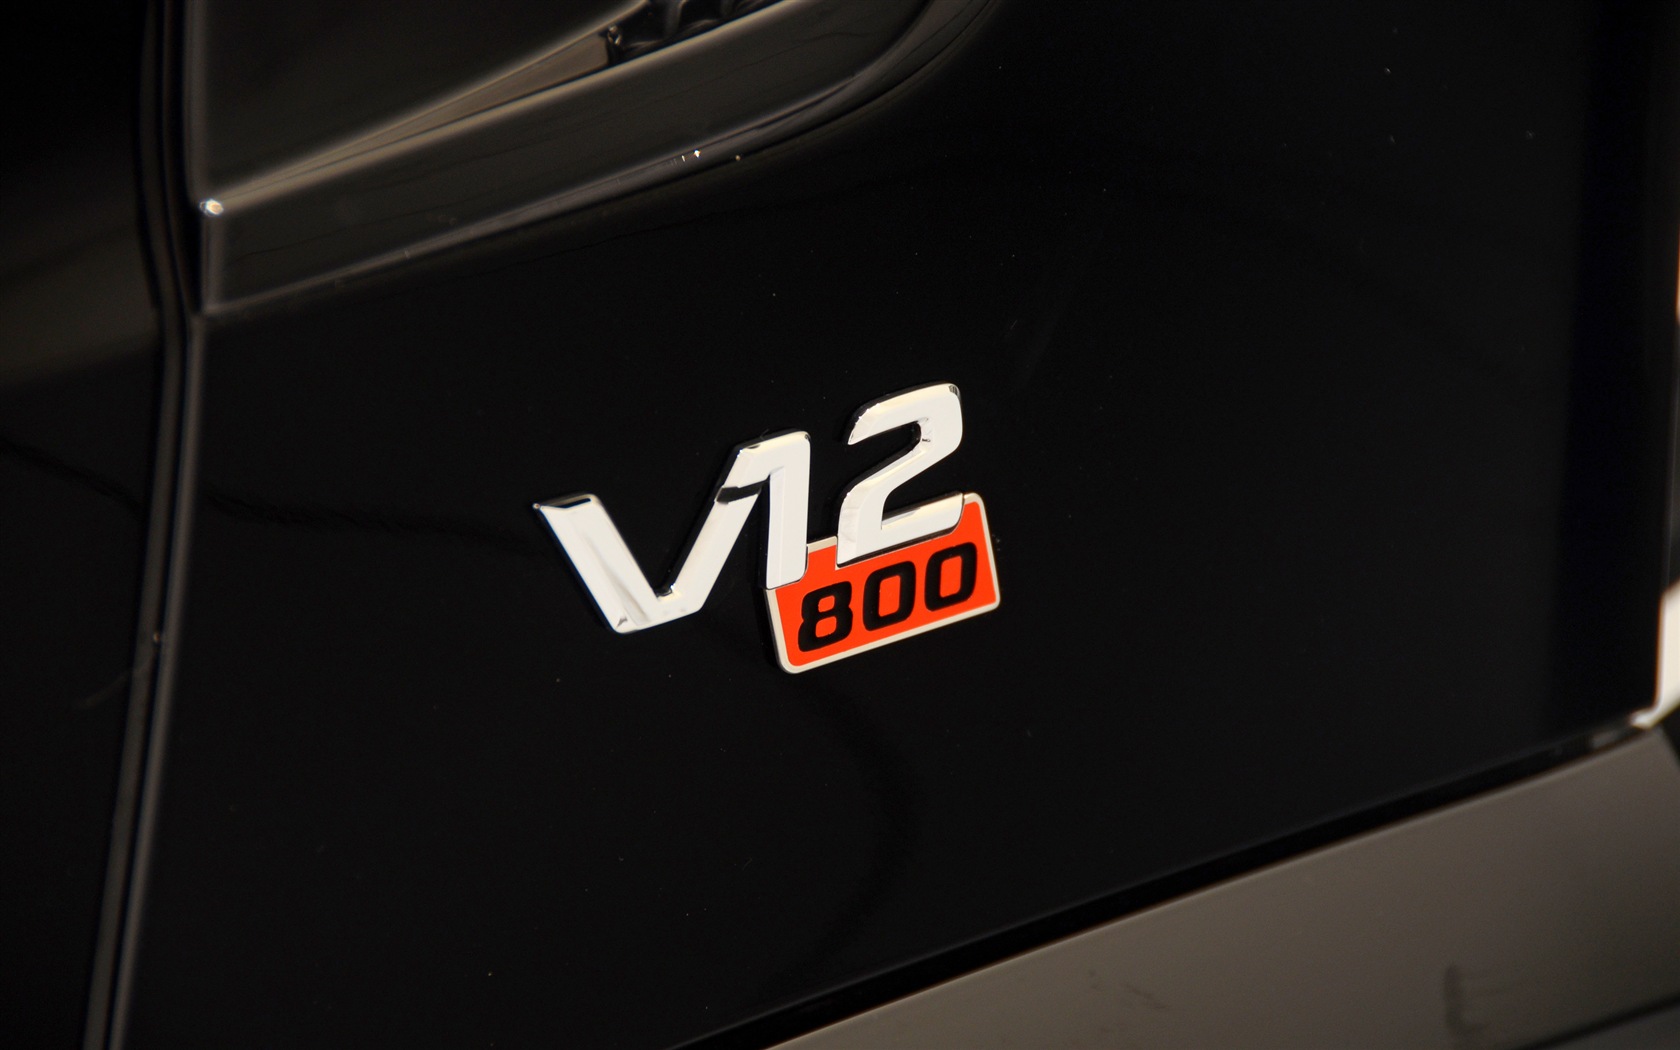 2013 Brabus 800 Roadster 博速 跑车高清壁纸17 - 1680x1050